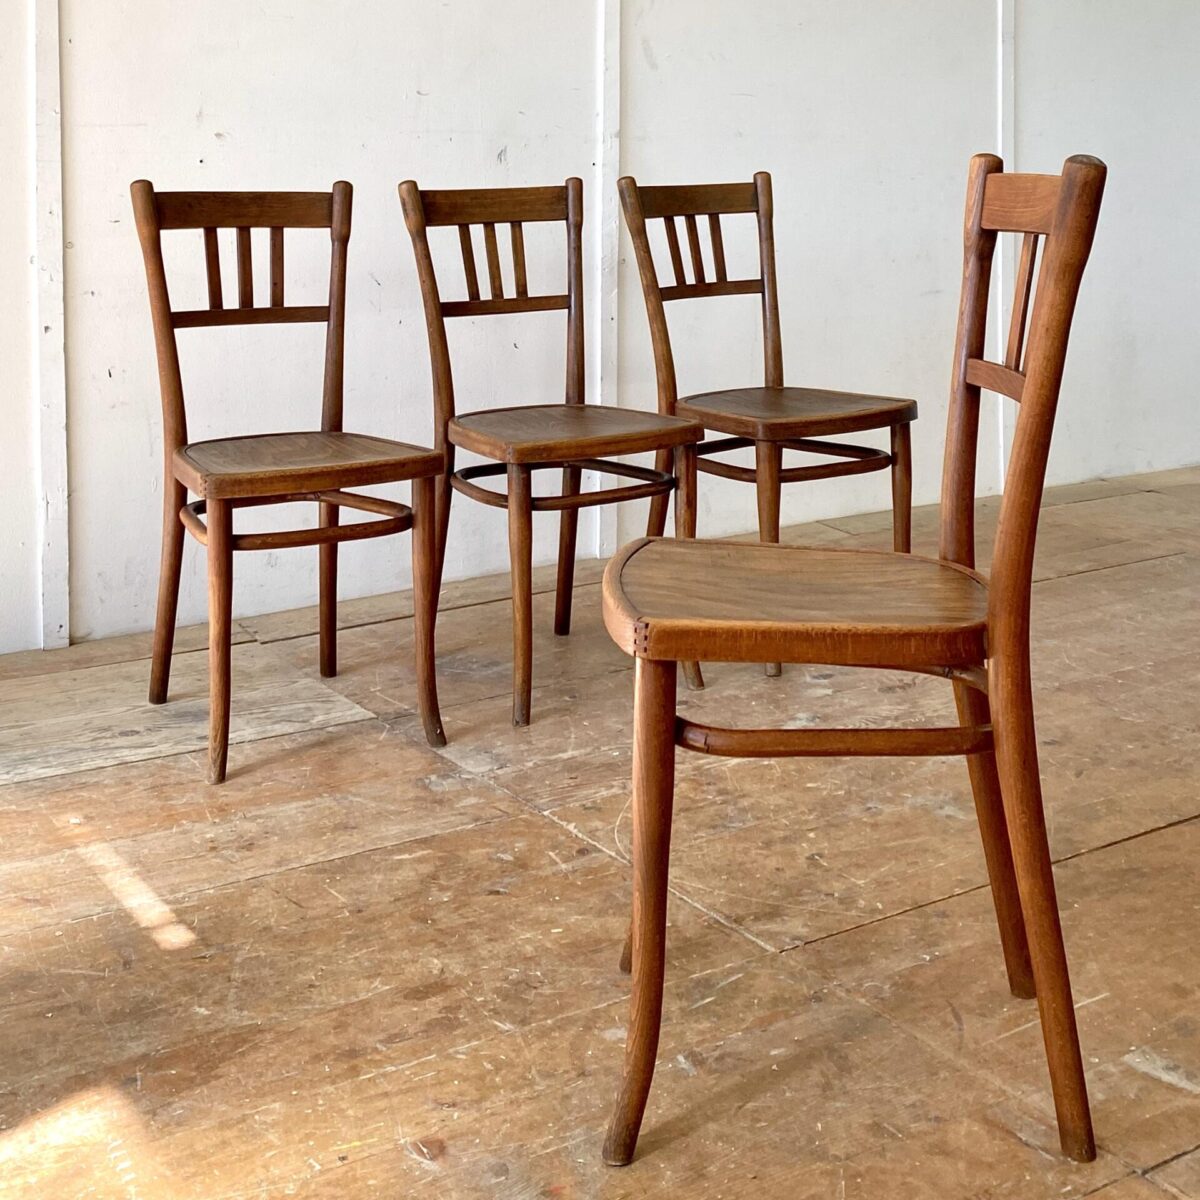 Deuxieme.shop Thonet Stühle Wienerstühle Bugholz Stühle designklassiker. 4er Set dunkelbraune Bistrostühle von Thonet. Die Stühle haben eine warm-matte Alterspatina und sind in stabilem Zustand. 